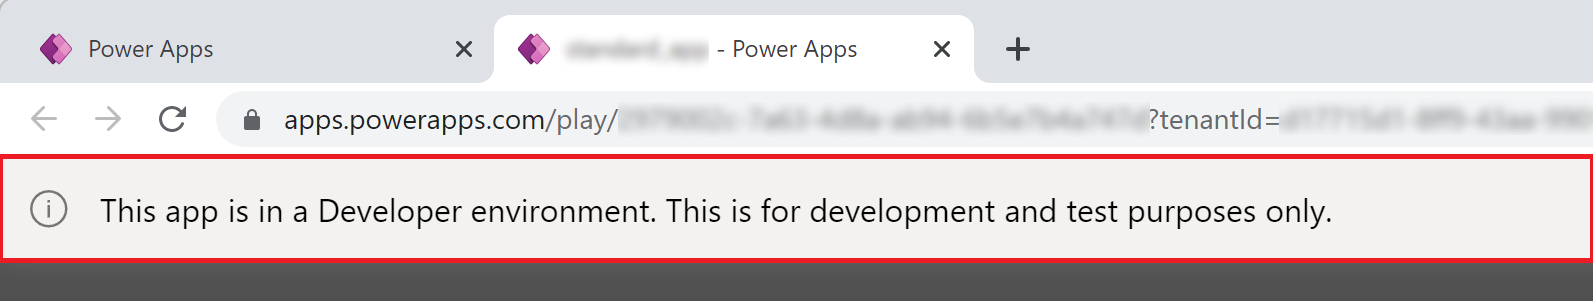 Power Apps fejlesztői környezet alkalmazásszalagja.